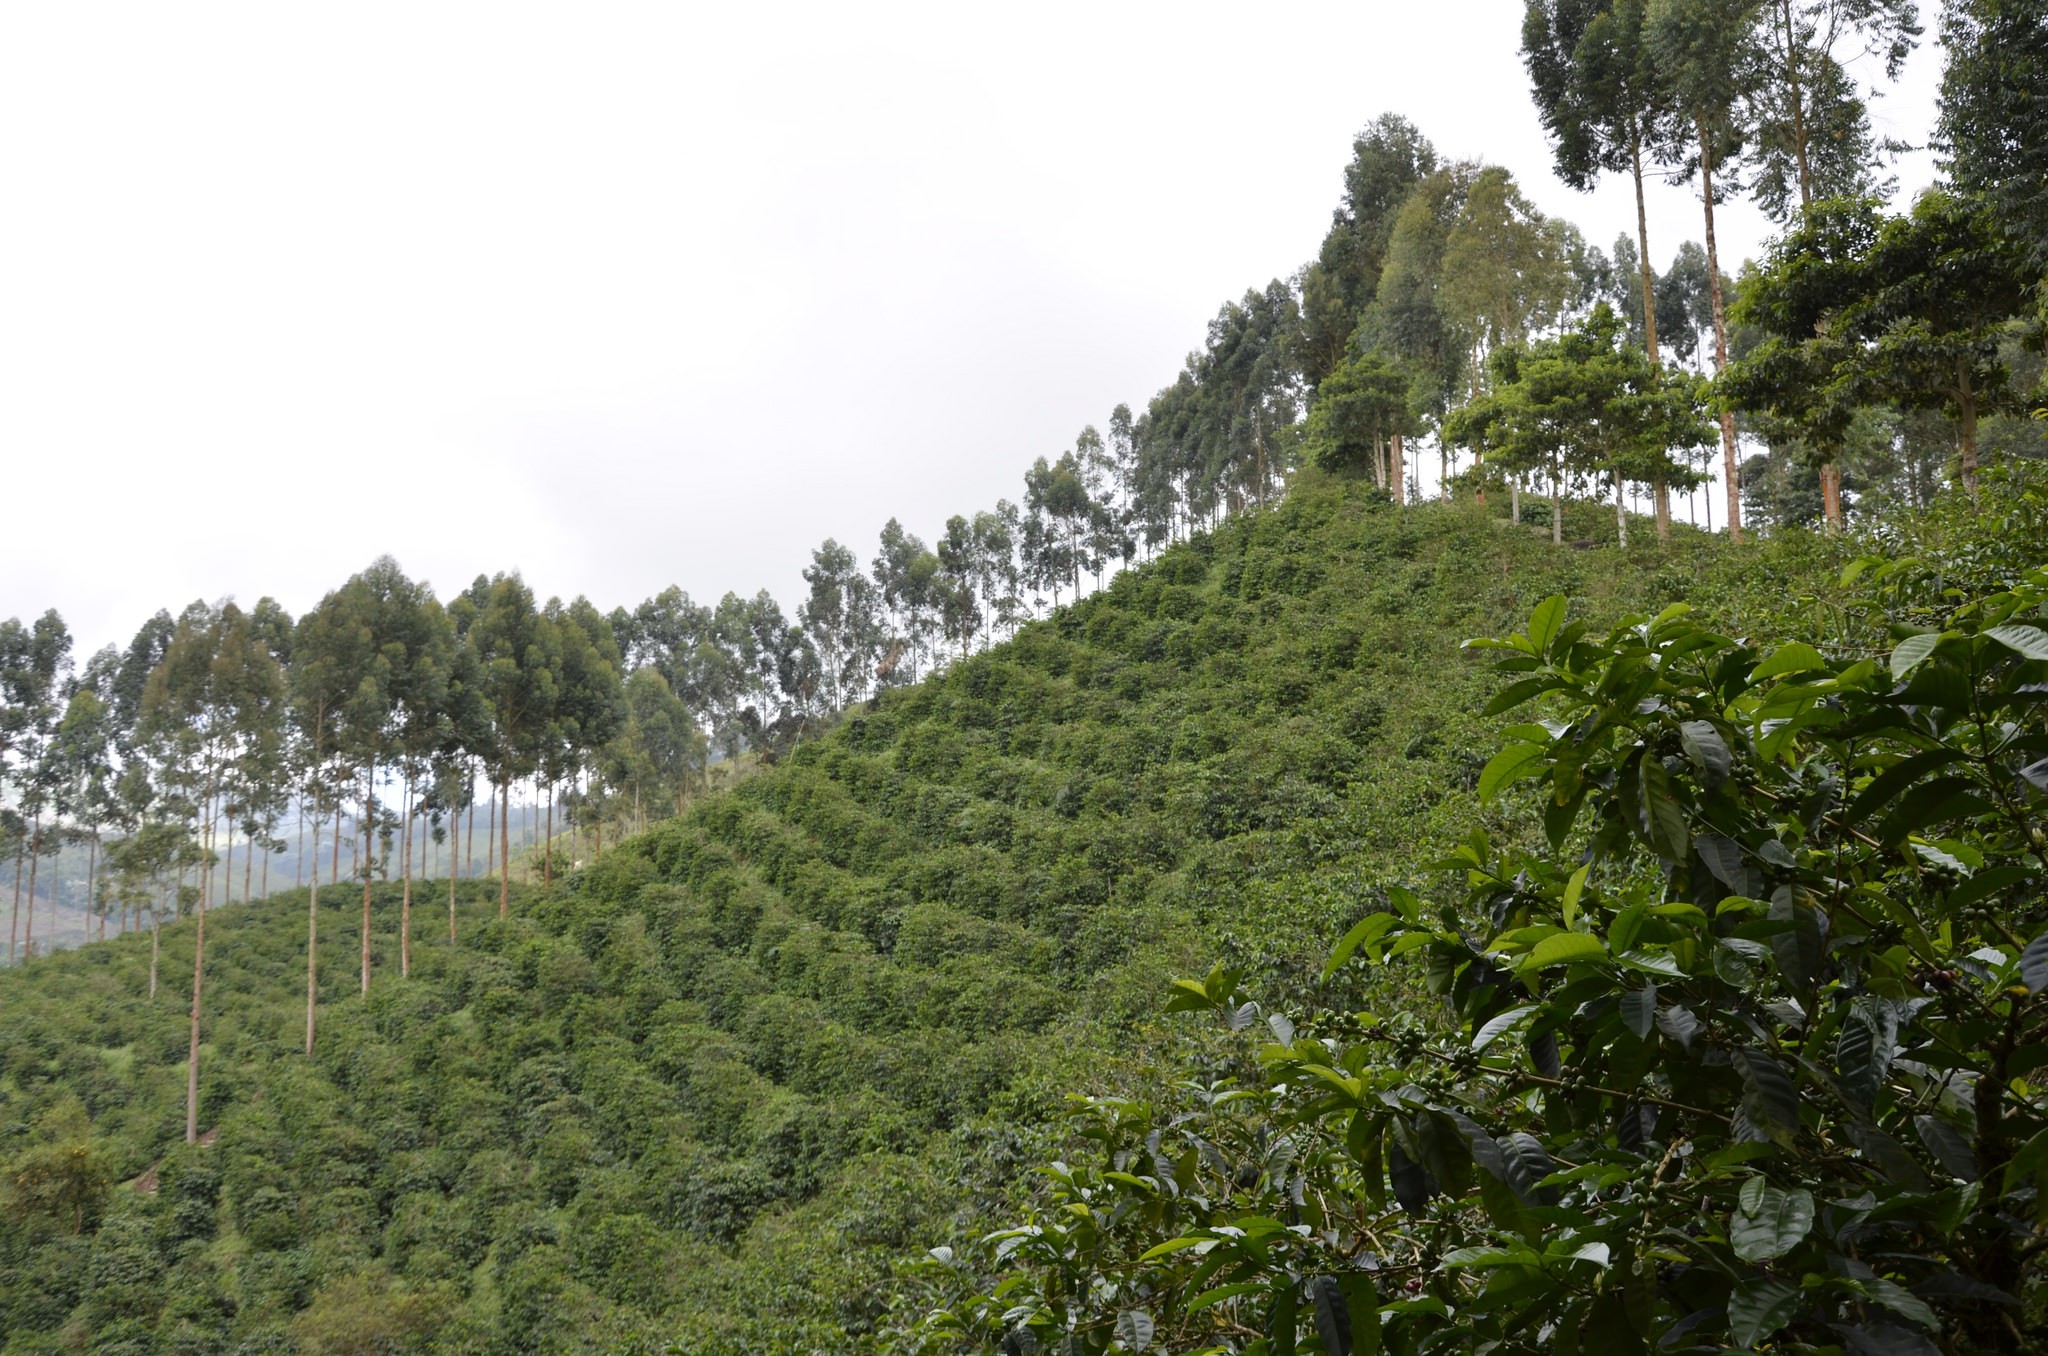 Aperçu des plantations de café dans la région de Tolima en Colombie, où est produit le café Fabrica